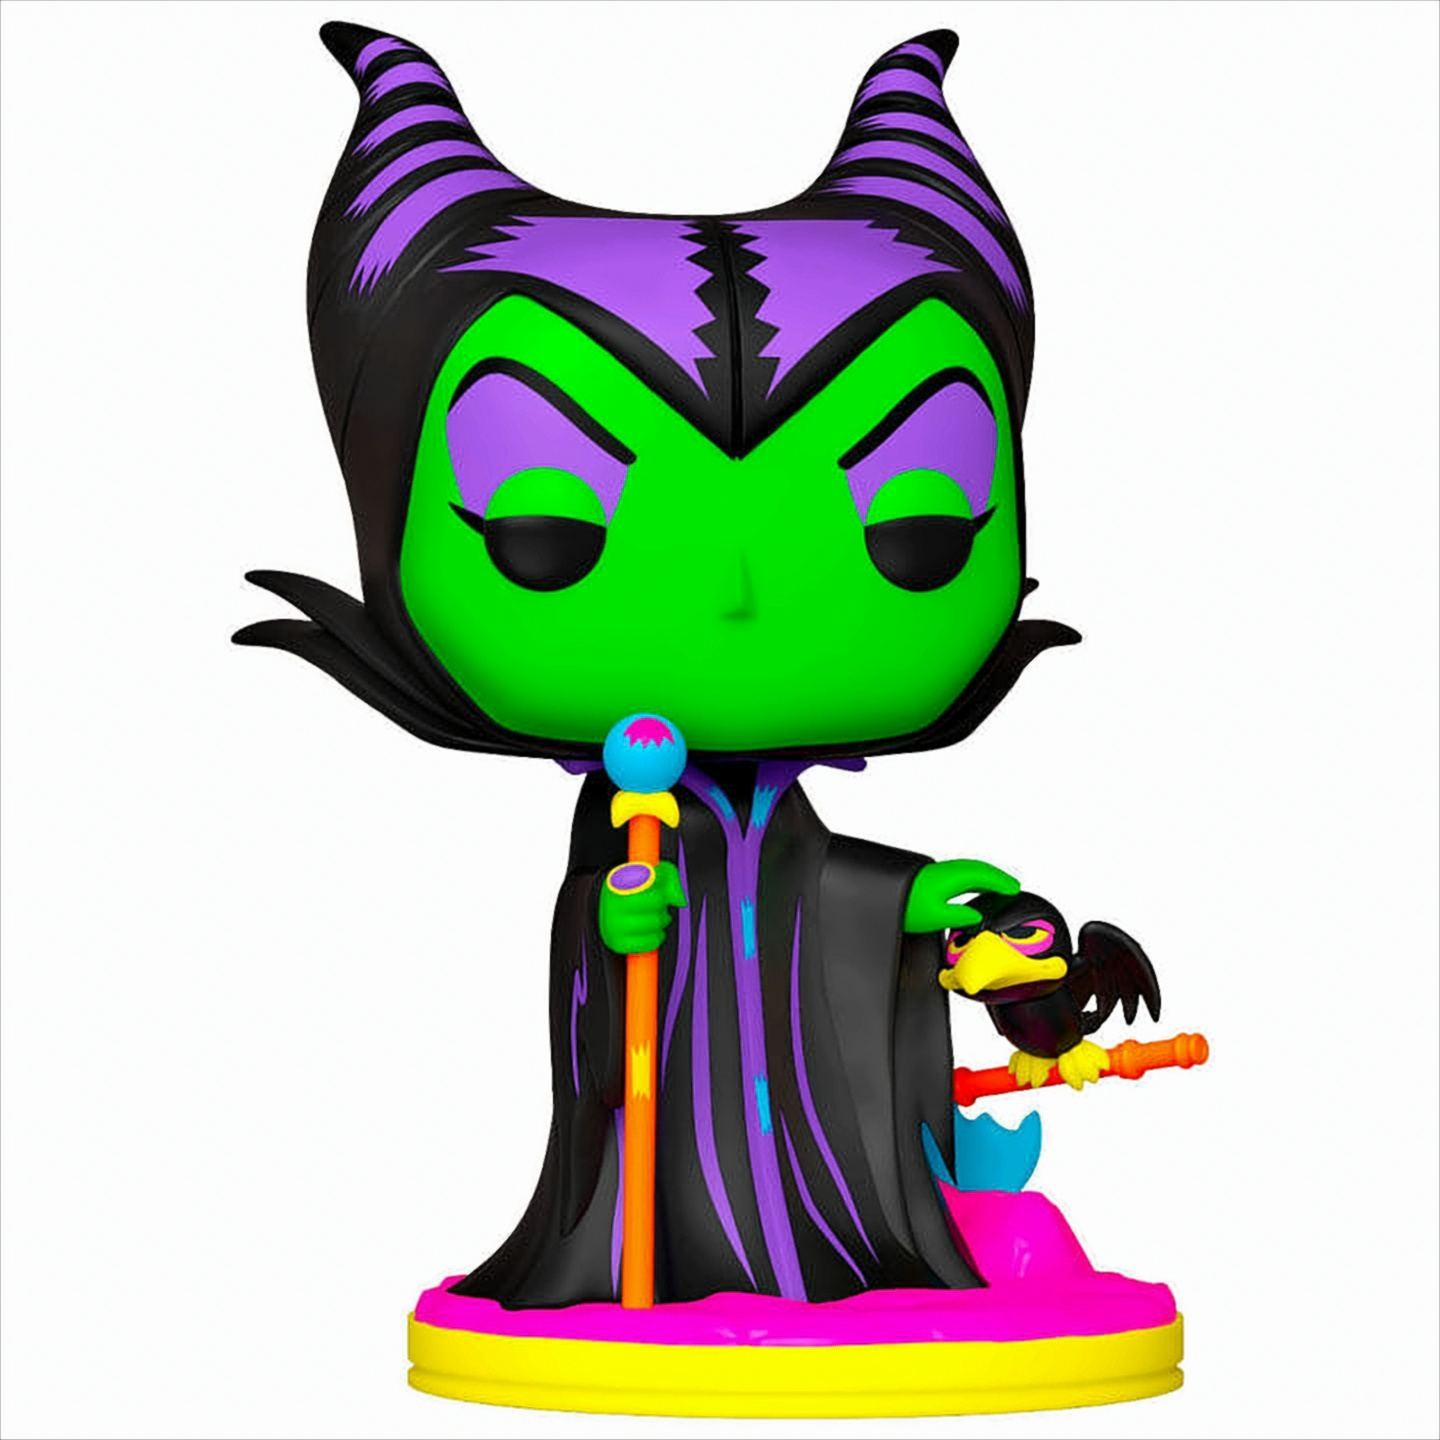 Villains Disney - - (Blacklight) POP Maleficent